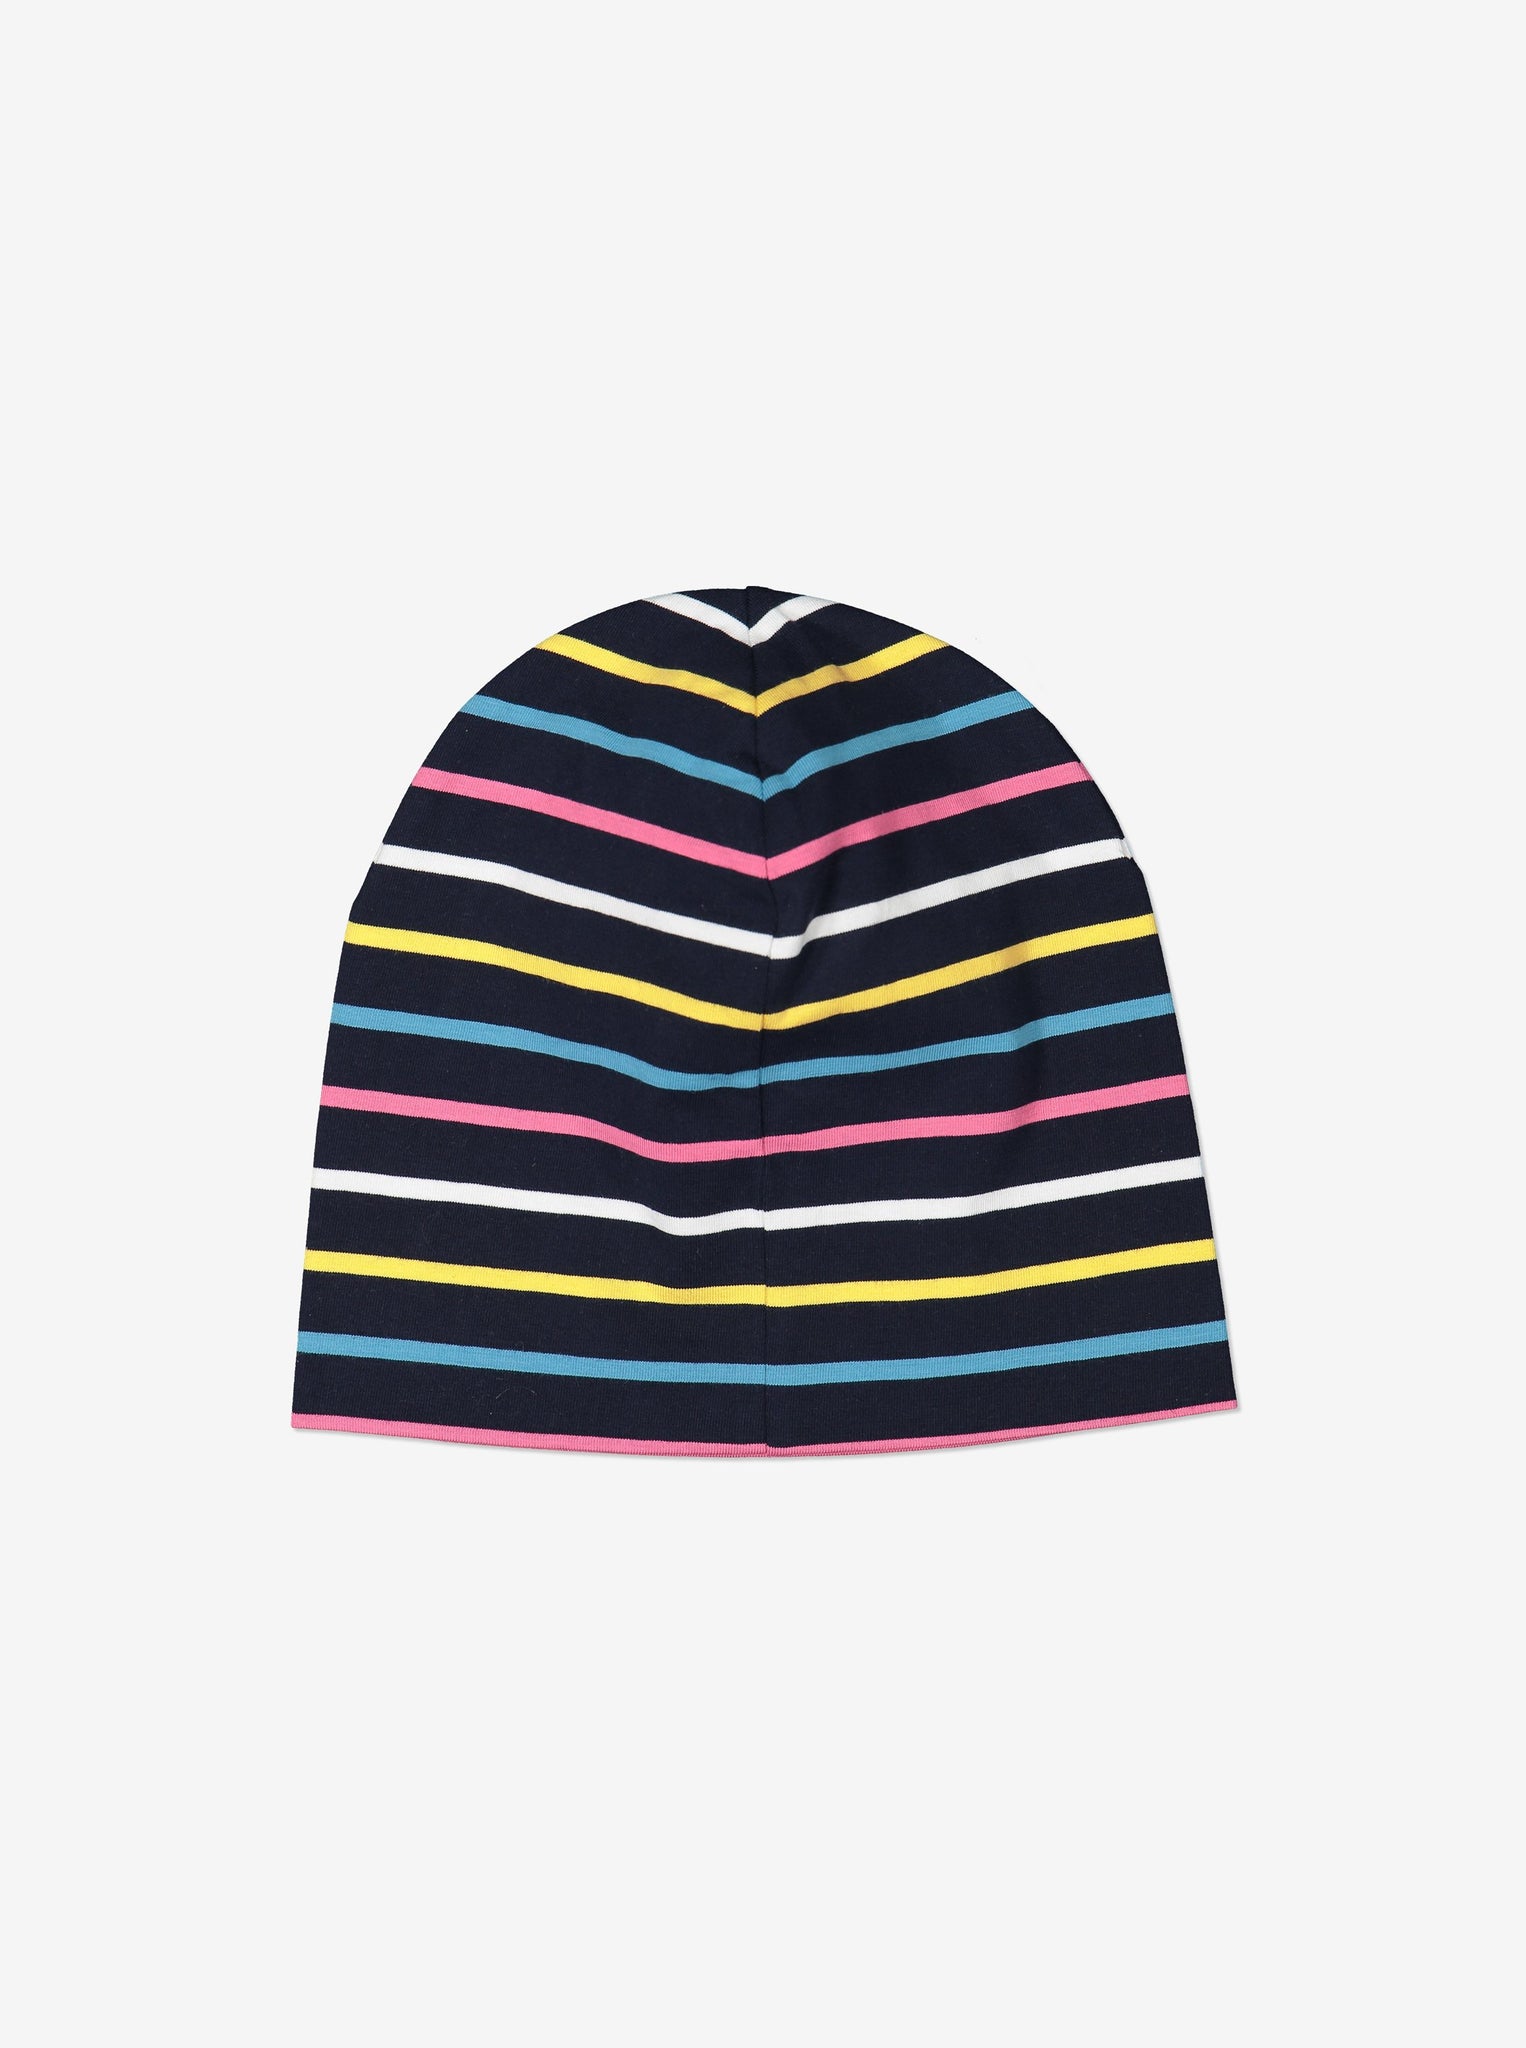 Striped Kids Navy Beanie Hat